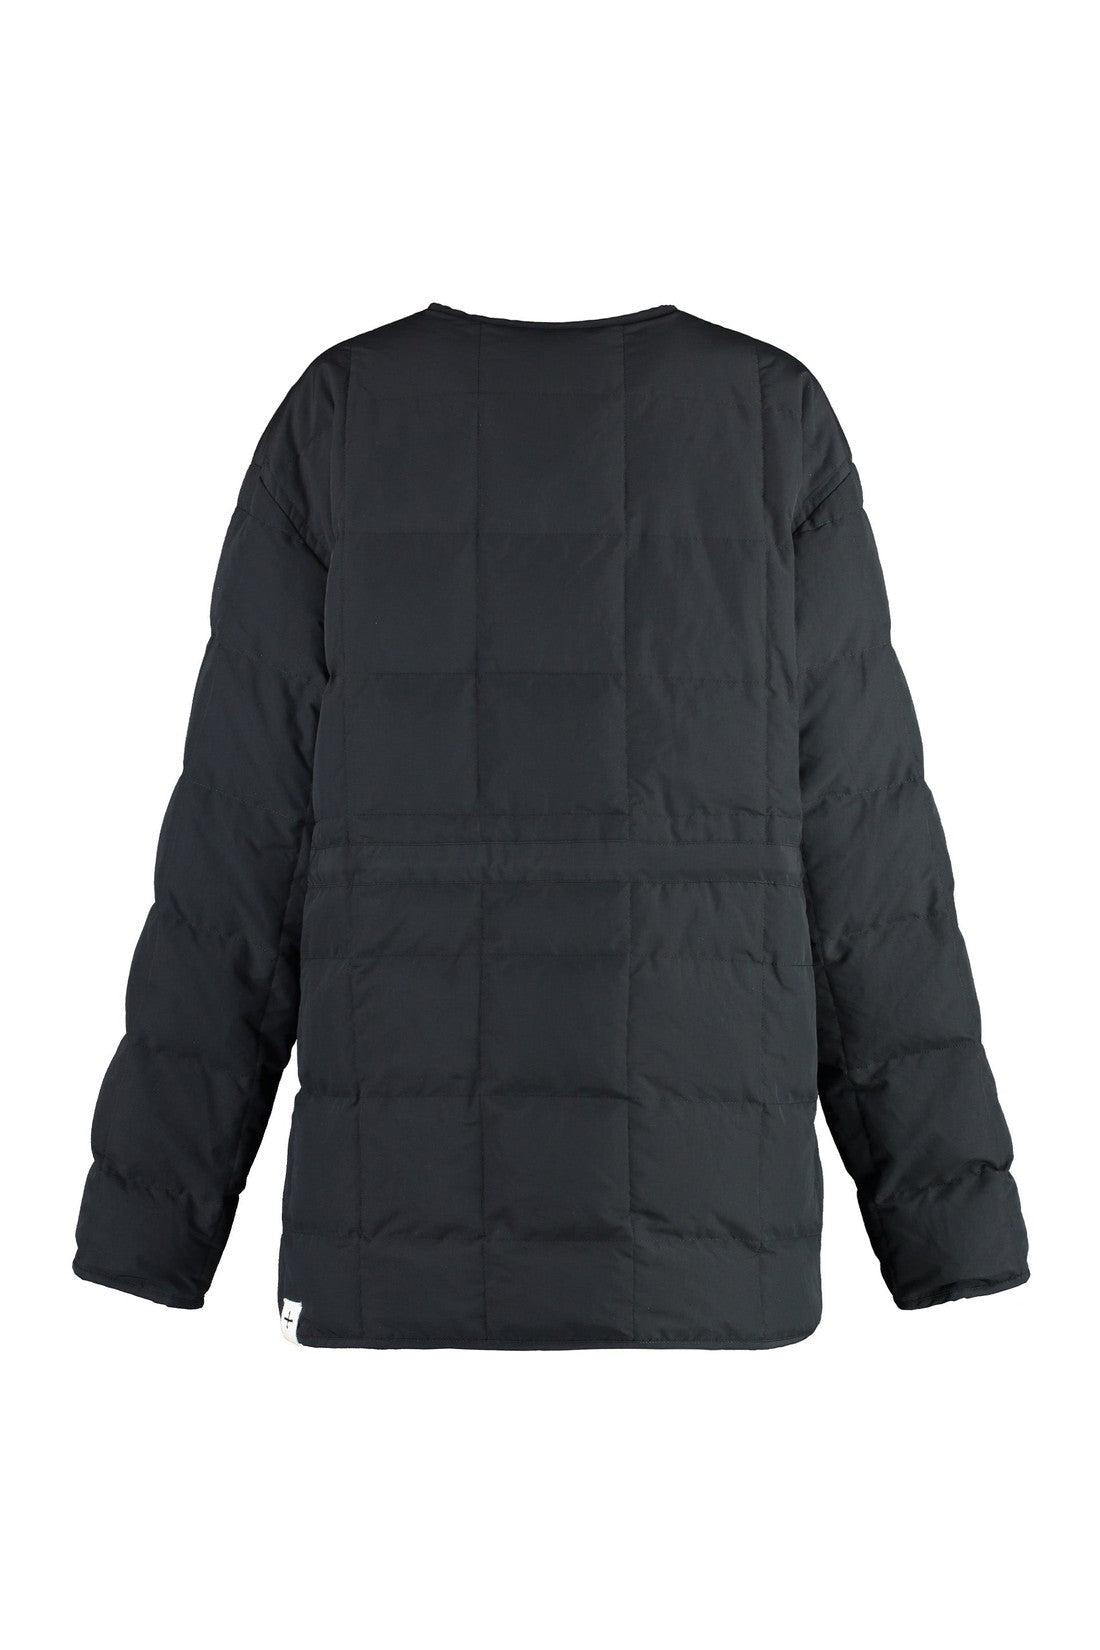 Jil Sander-OUTLET-SALE-Techno fabric down jacket-ARCHIVIST